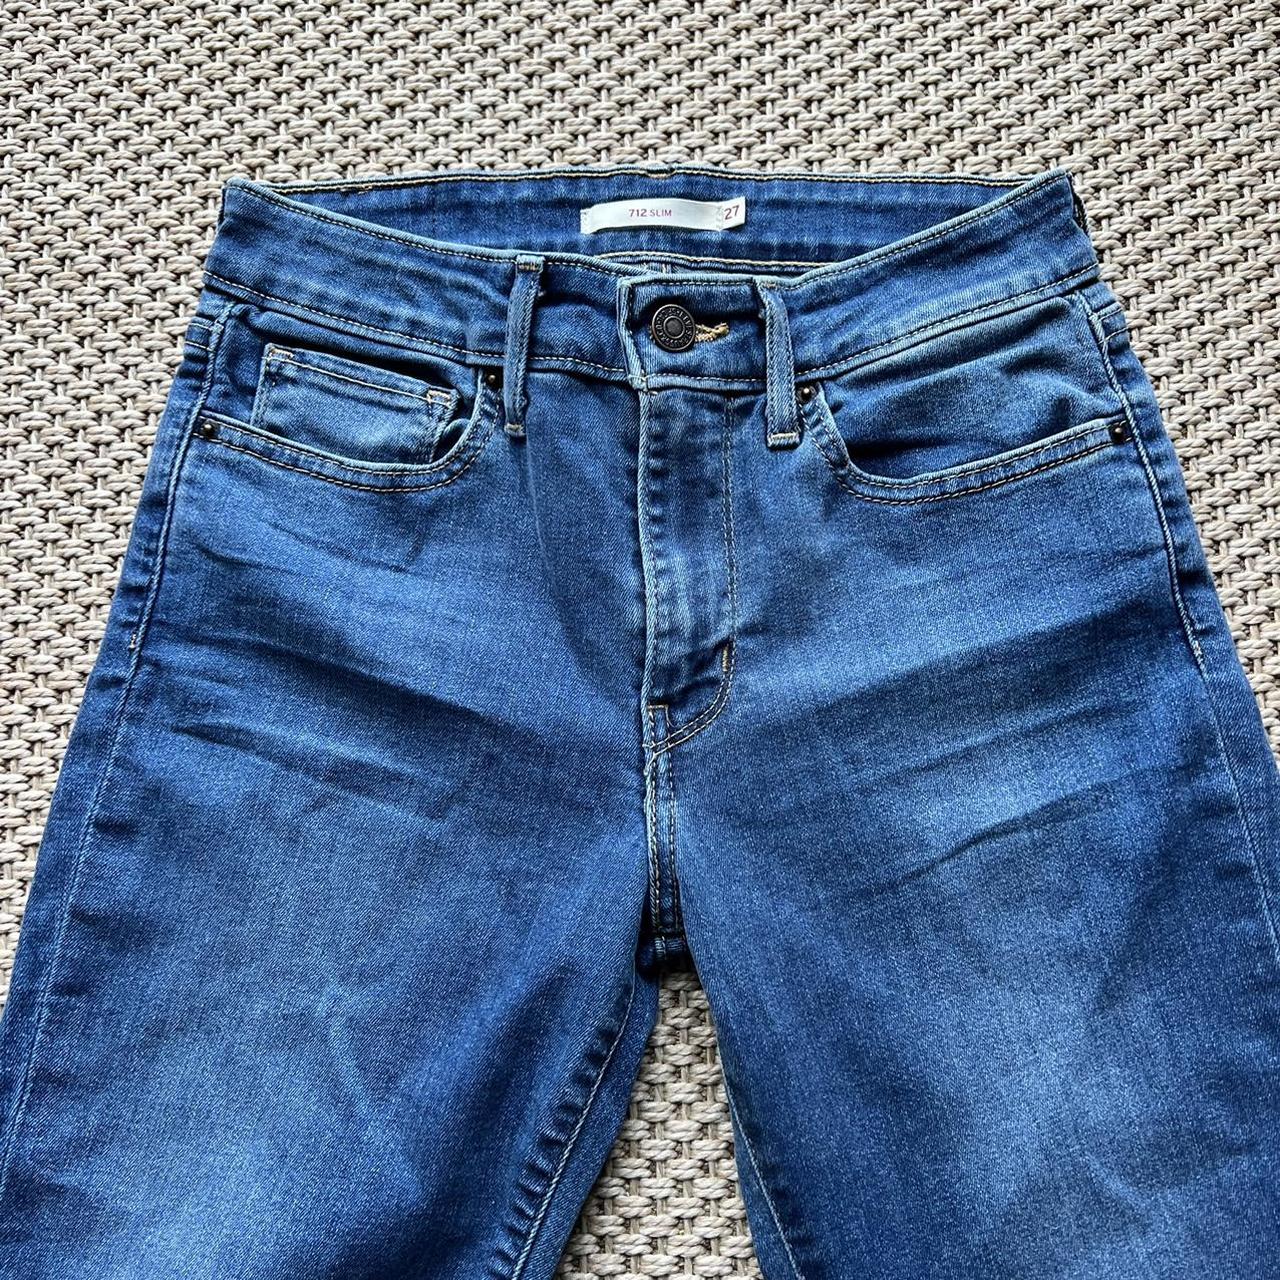 Authentic Levi's denim jeans Slim fit Style 712,... - Depop